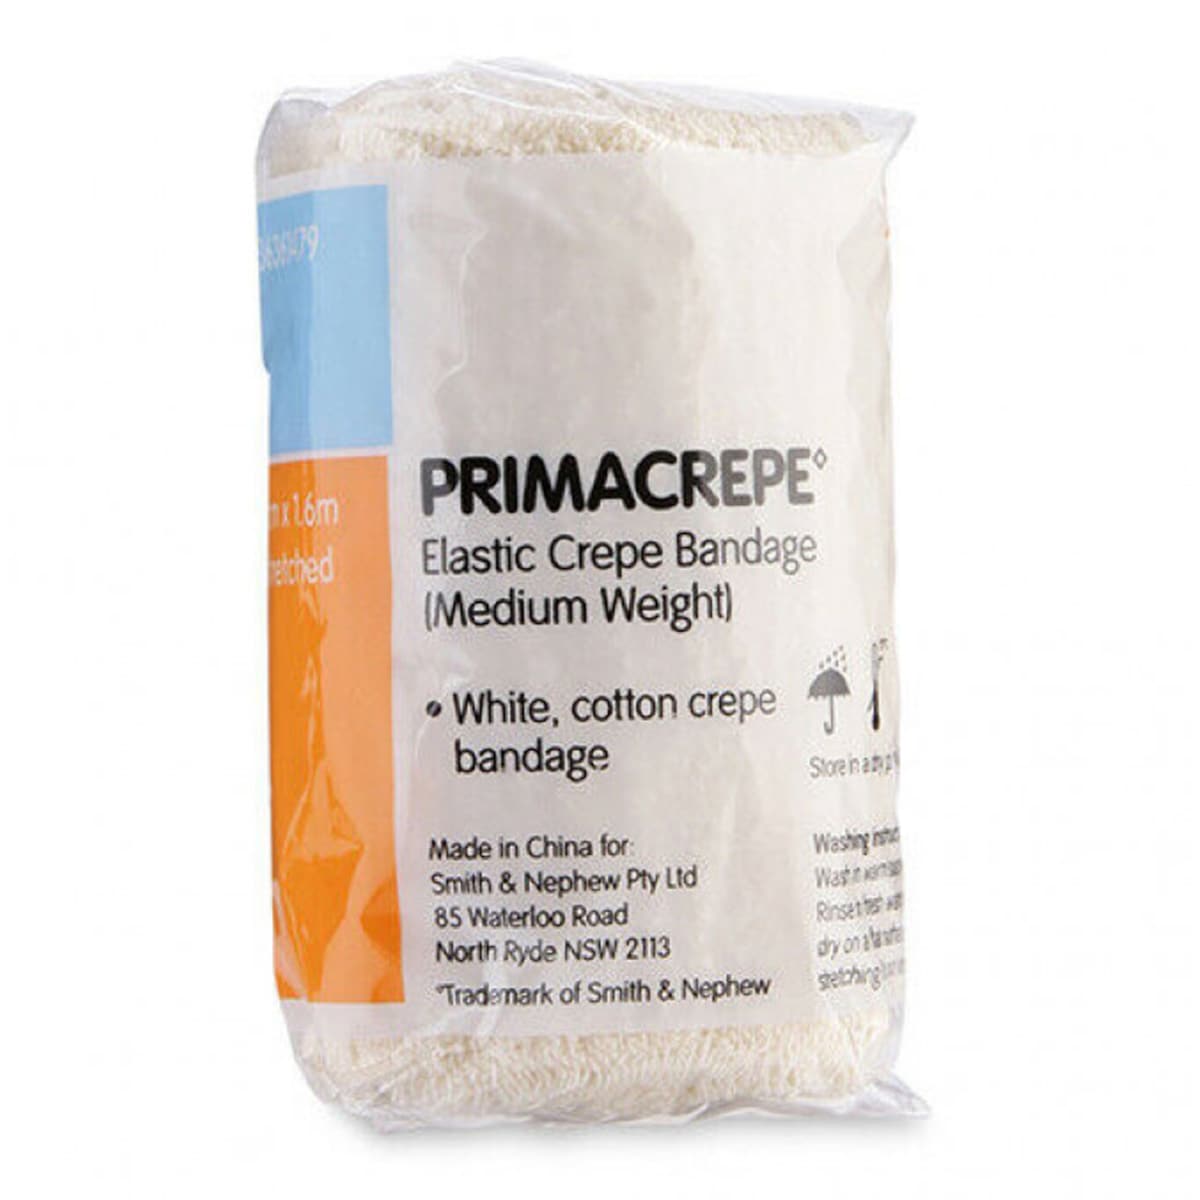 Primacrepe Elastic Crepe Medium Support 7.5cm x 1.6m by Smith & Nephew